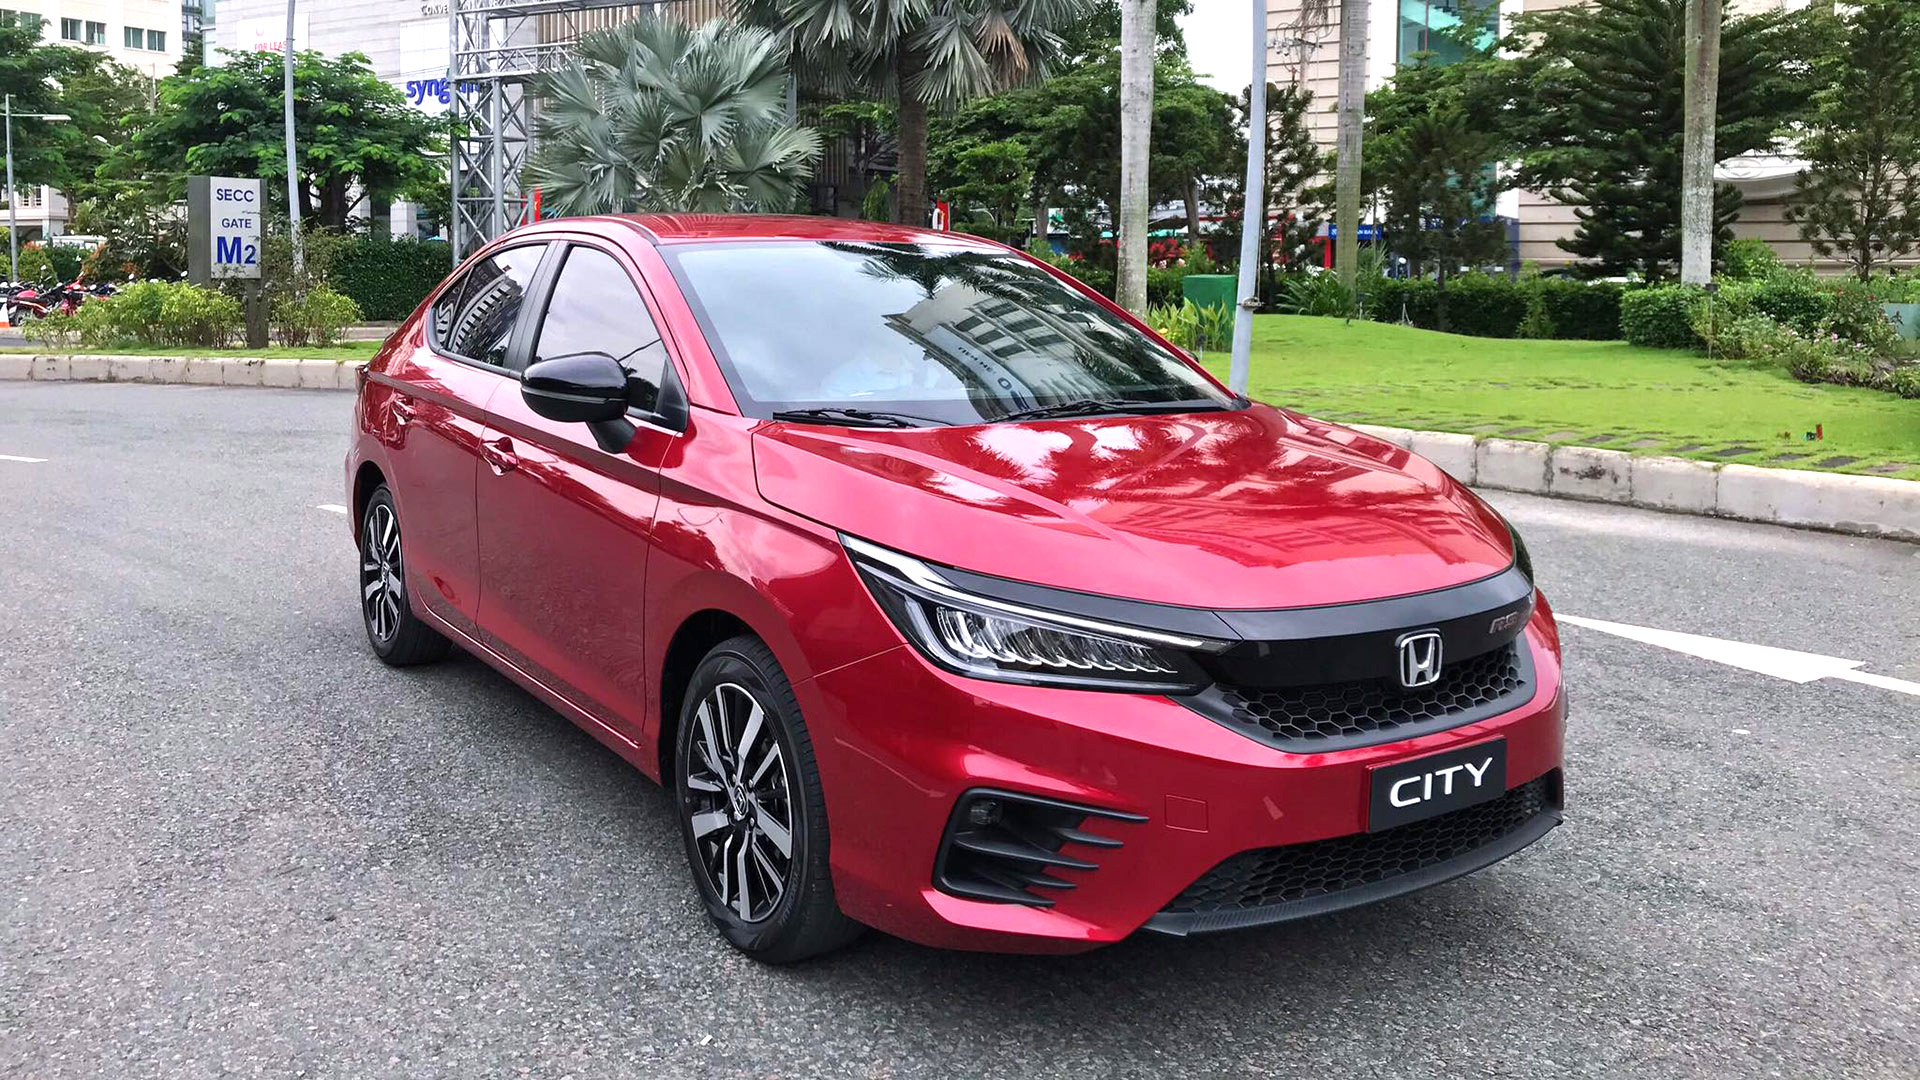 Honda City 2021 thế hệ thứ 5 hoàn toàn mới sắp ra mắt 9/12/2020 | Honda Ô tô Khánh Hòa - Nha Trang | Hotline 0905 254 255